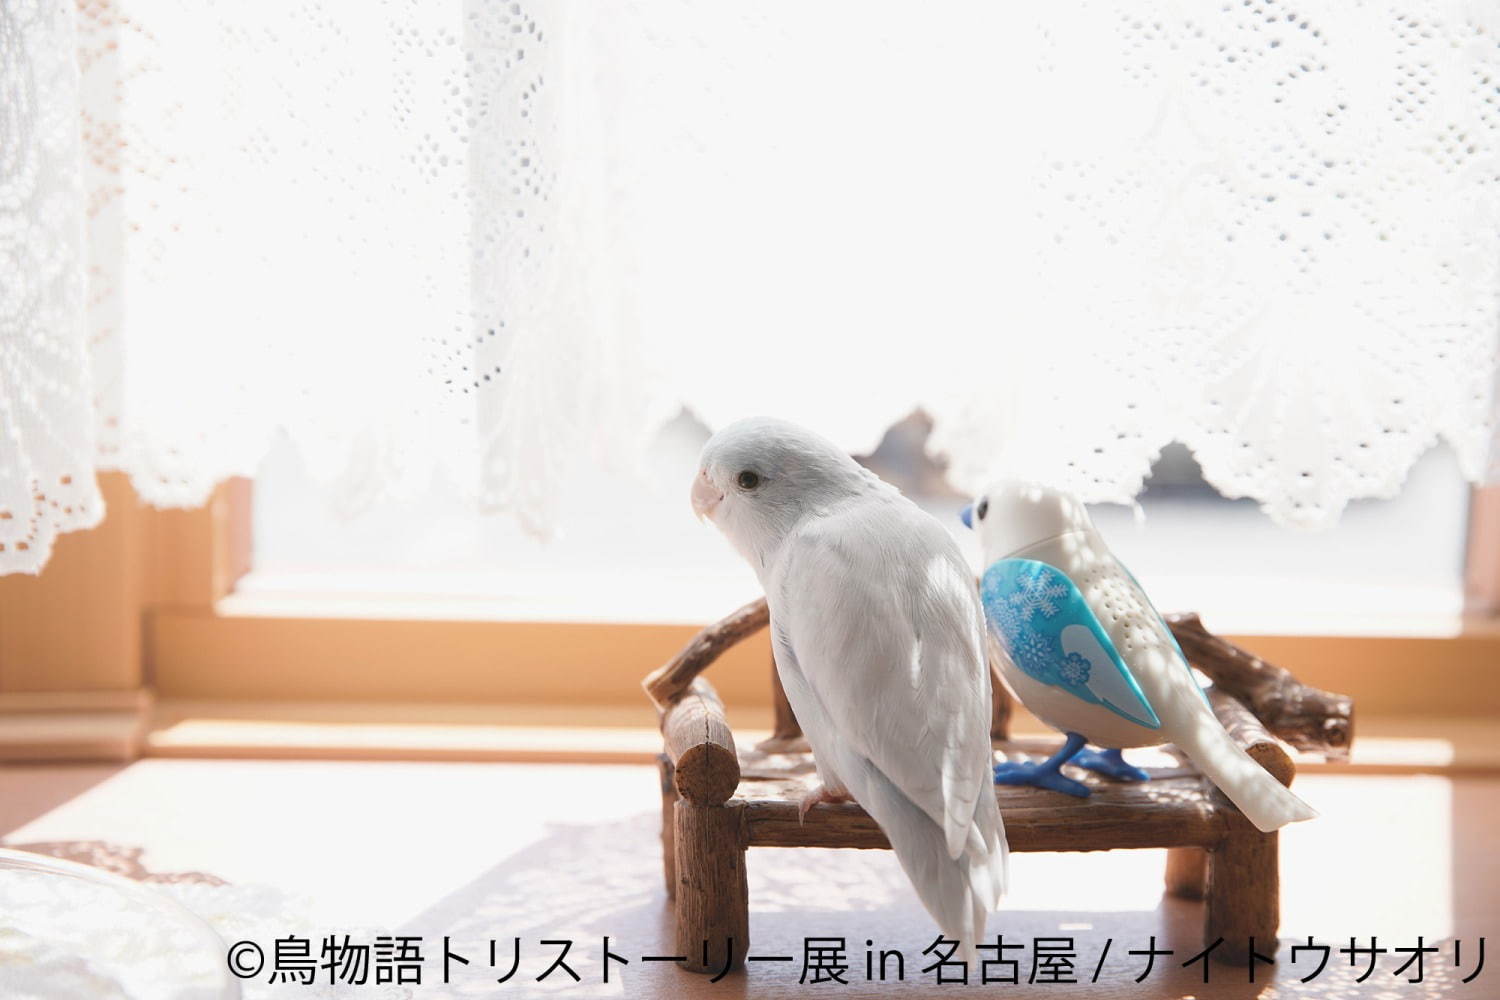 「鳥物語トリストーリー展」名古屋で、鳥の“一瞬の美しさ”を表した写真展＆ハンドメイドグッズ物販｜写真8